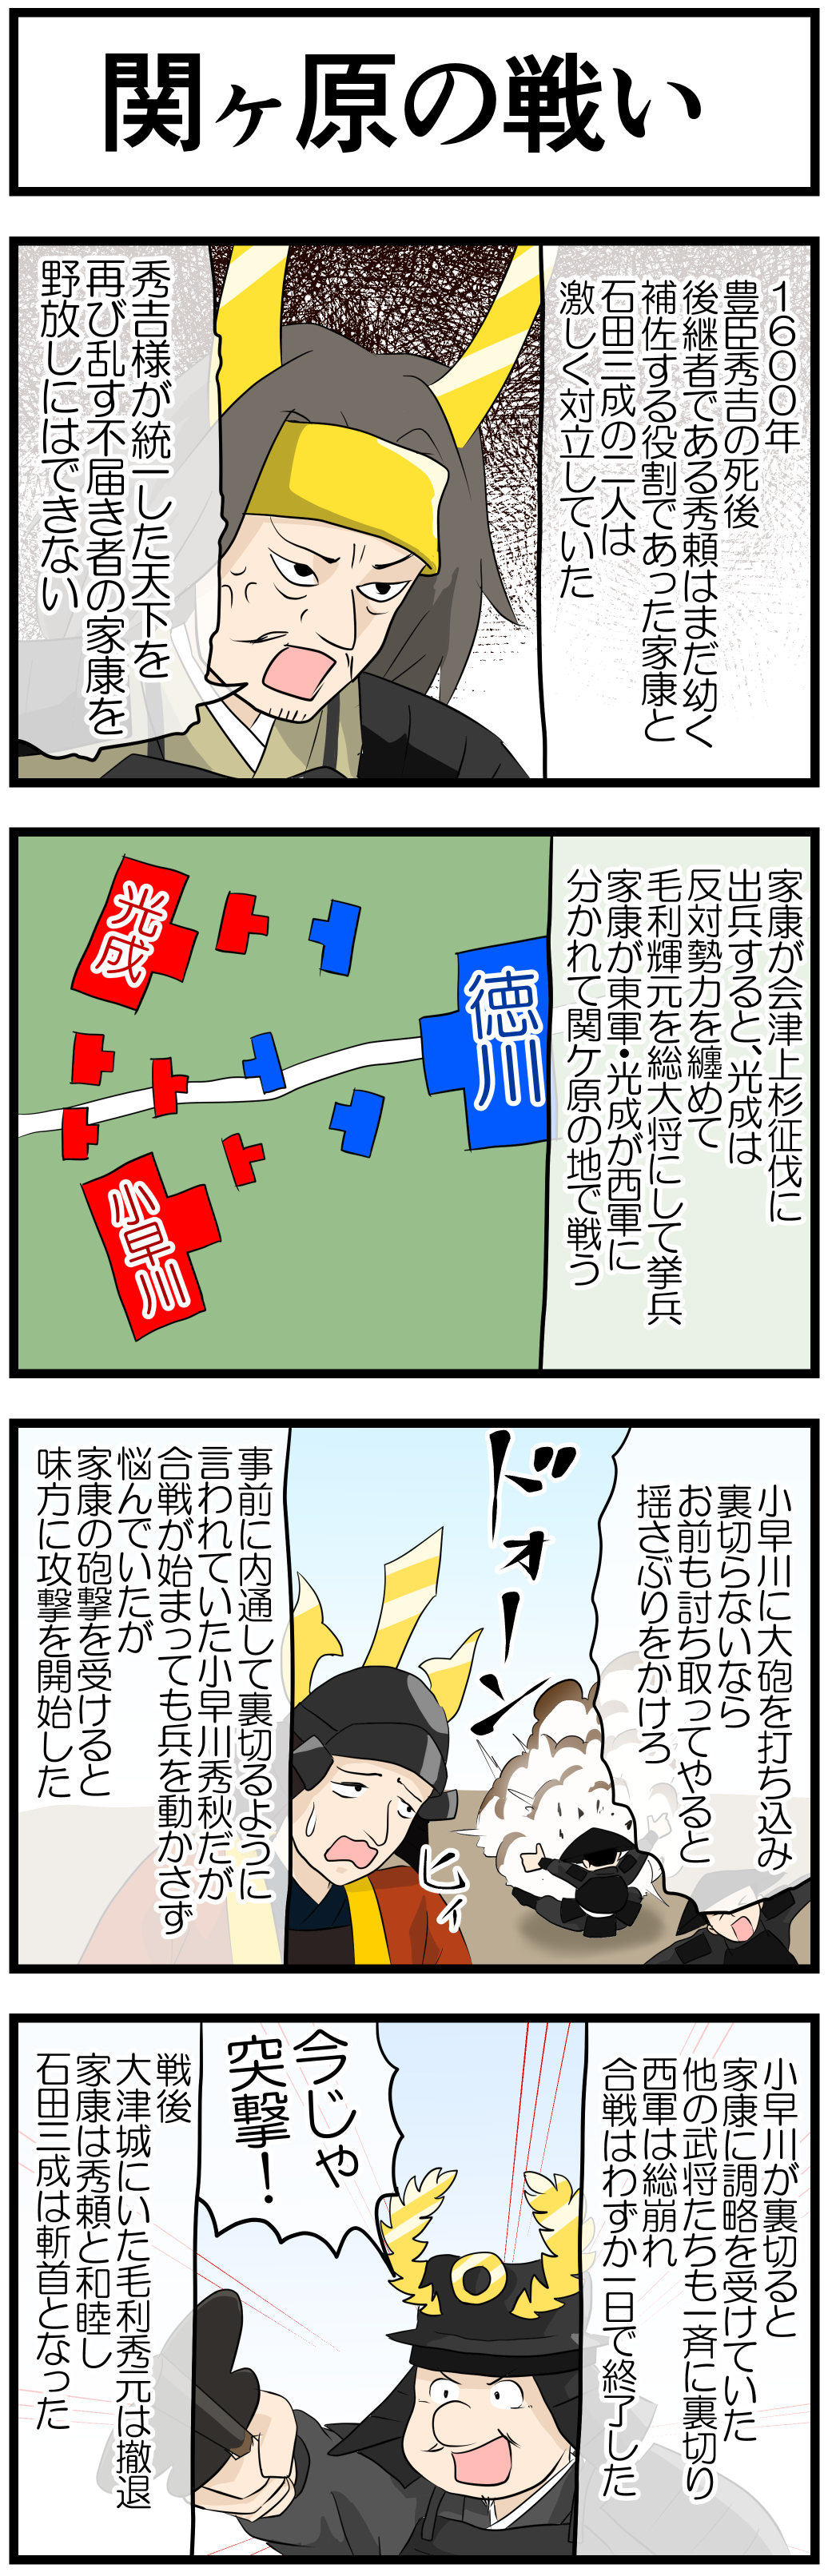 徳川家康の一生 4コマ漫画で歴史の勉強 Novita 勉強法